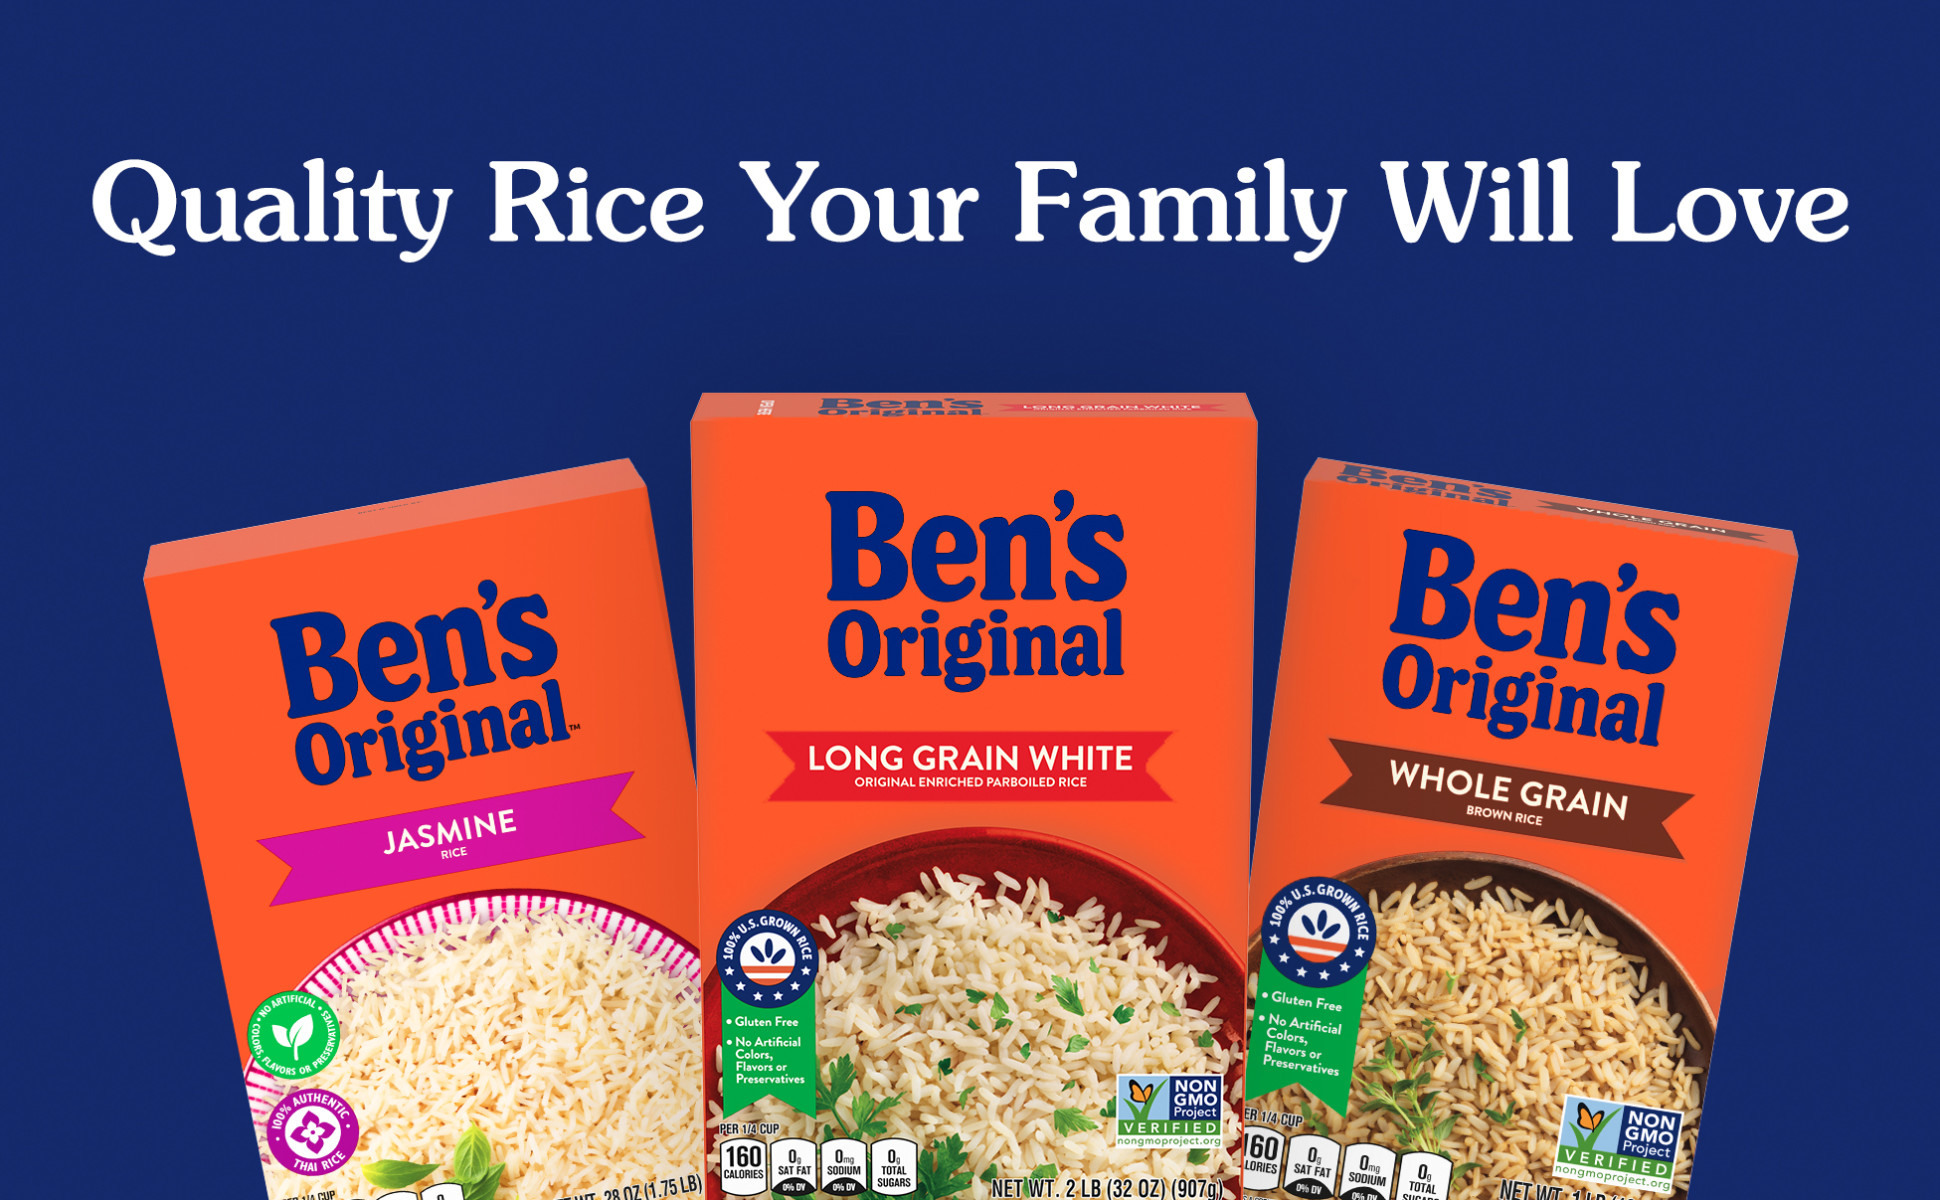 Uncle Ben's Original Enriched Parboiled Long Grain Rice, 2 lb